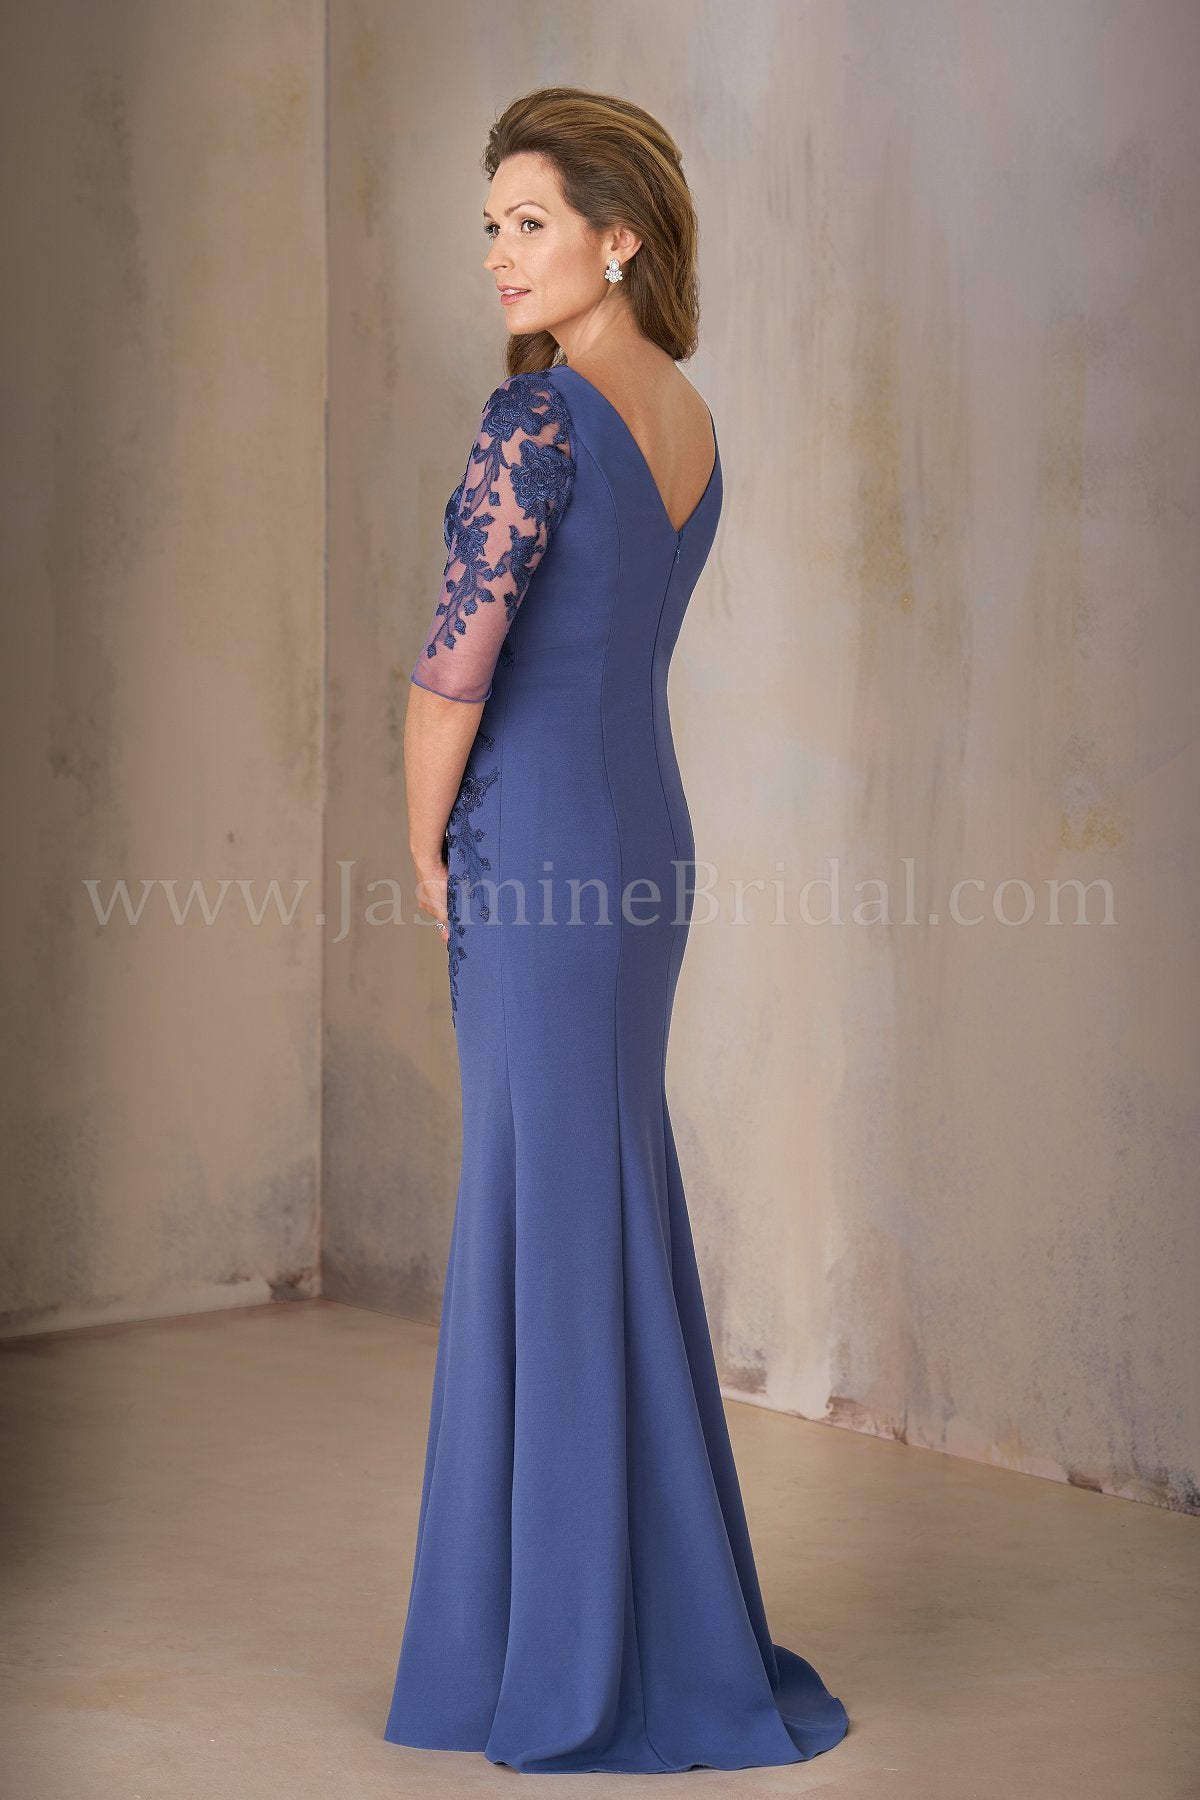 Jasmine K208002U Long Jewel Neckline Stretch Crepe w/ Lace MOB Dress with Sleeves